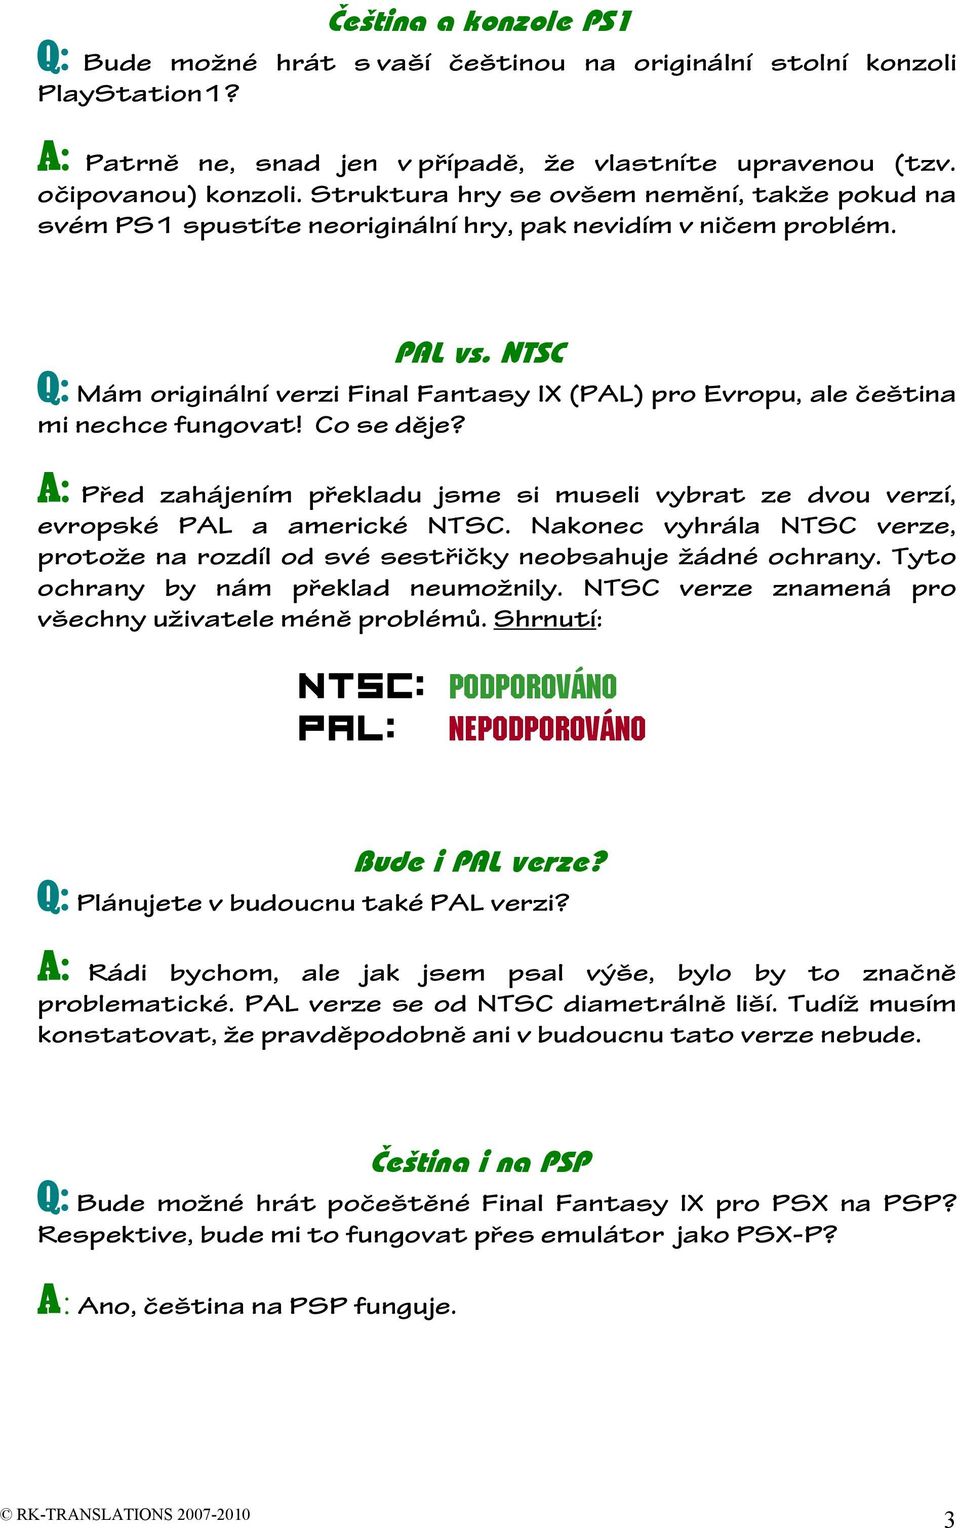 NTSC Q: Mám originální verzi Final Fantasy IX (PAL) pro Evropu, ale čeština mi nechce fungovat! Co se děje?